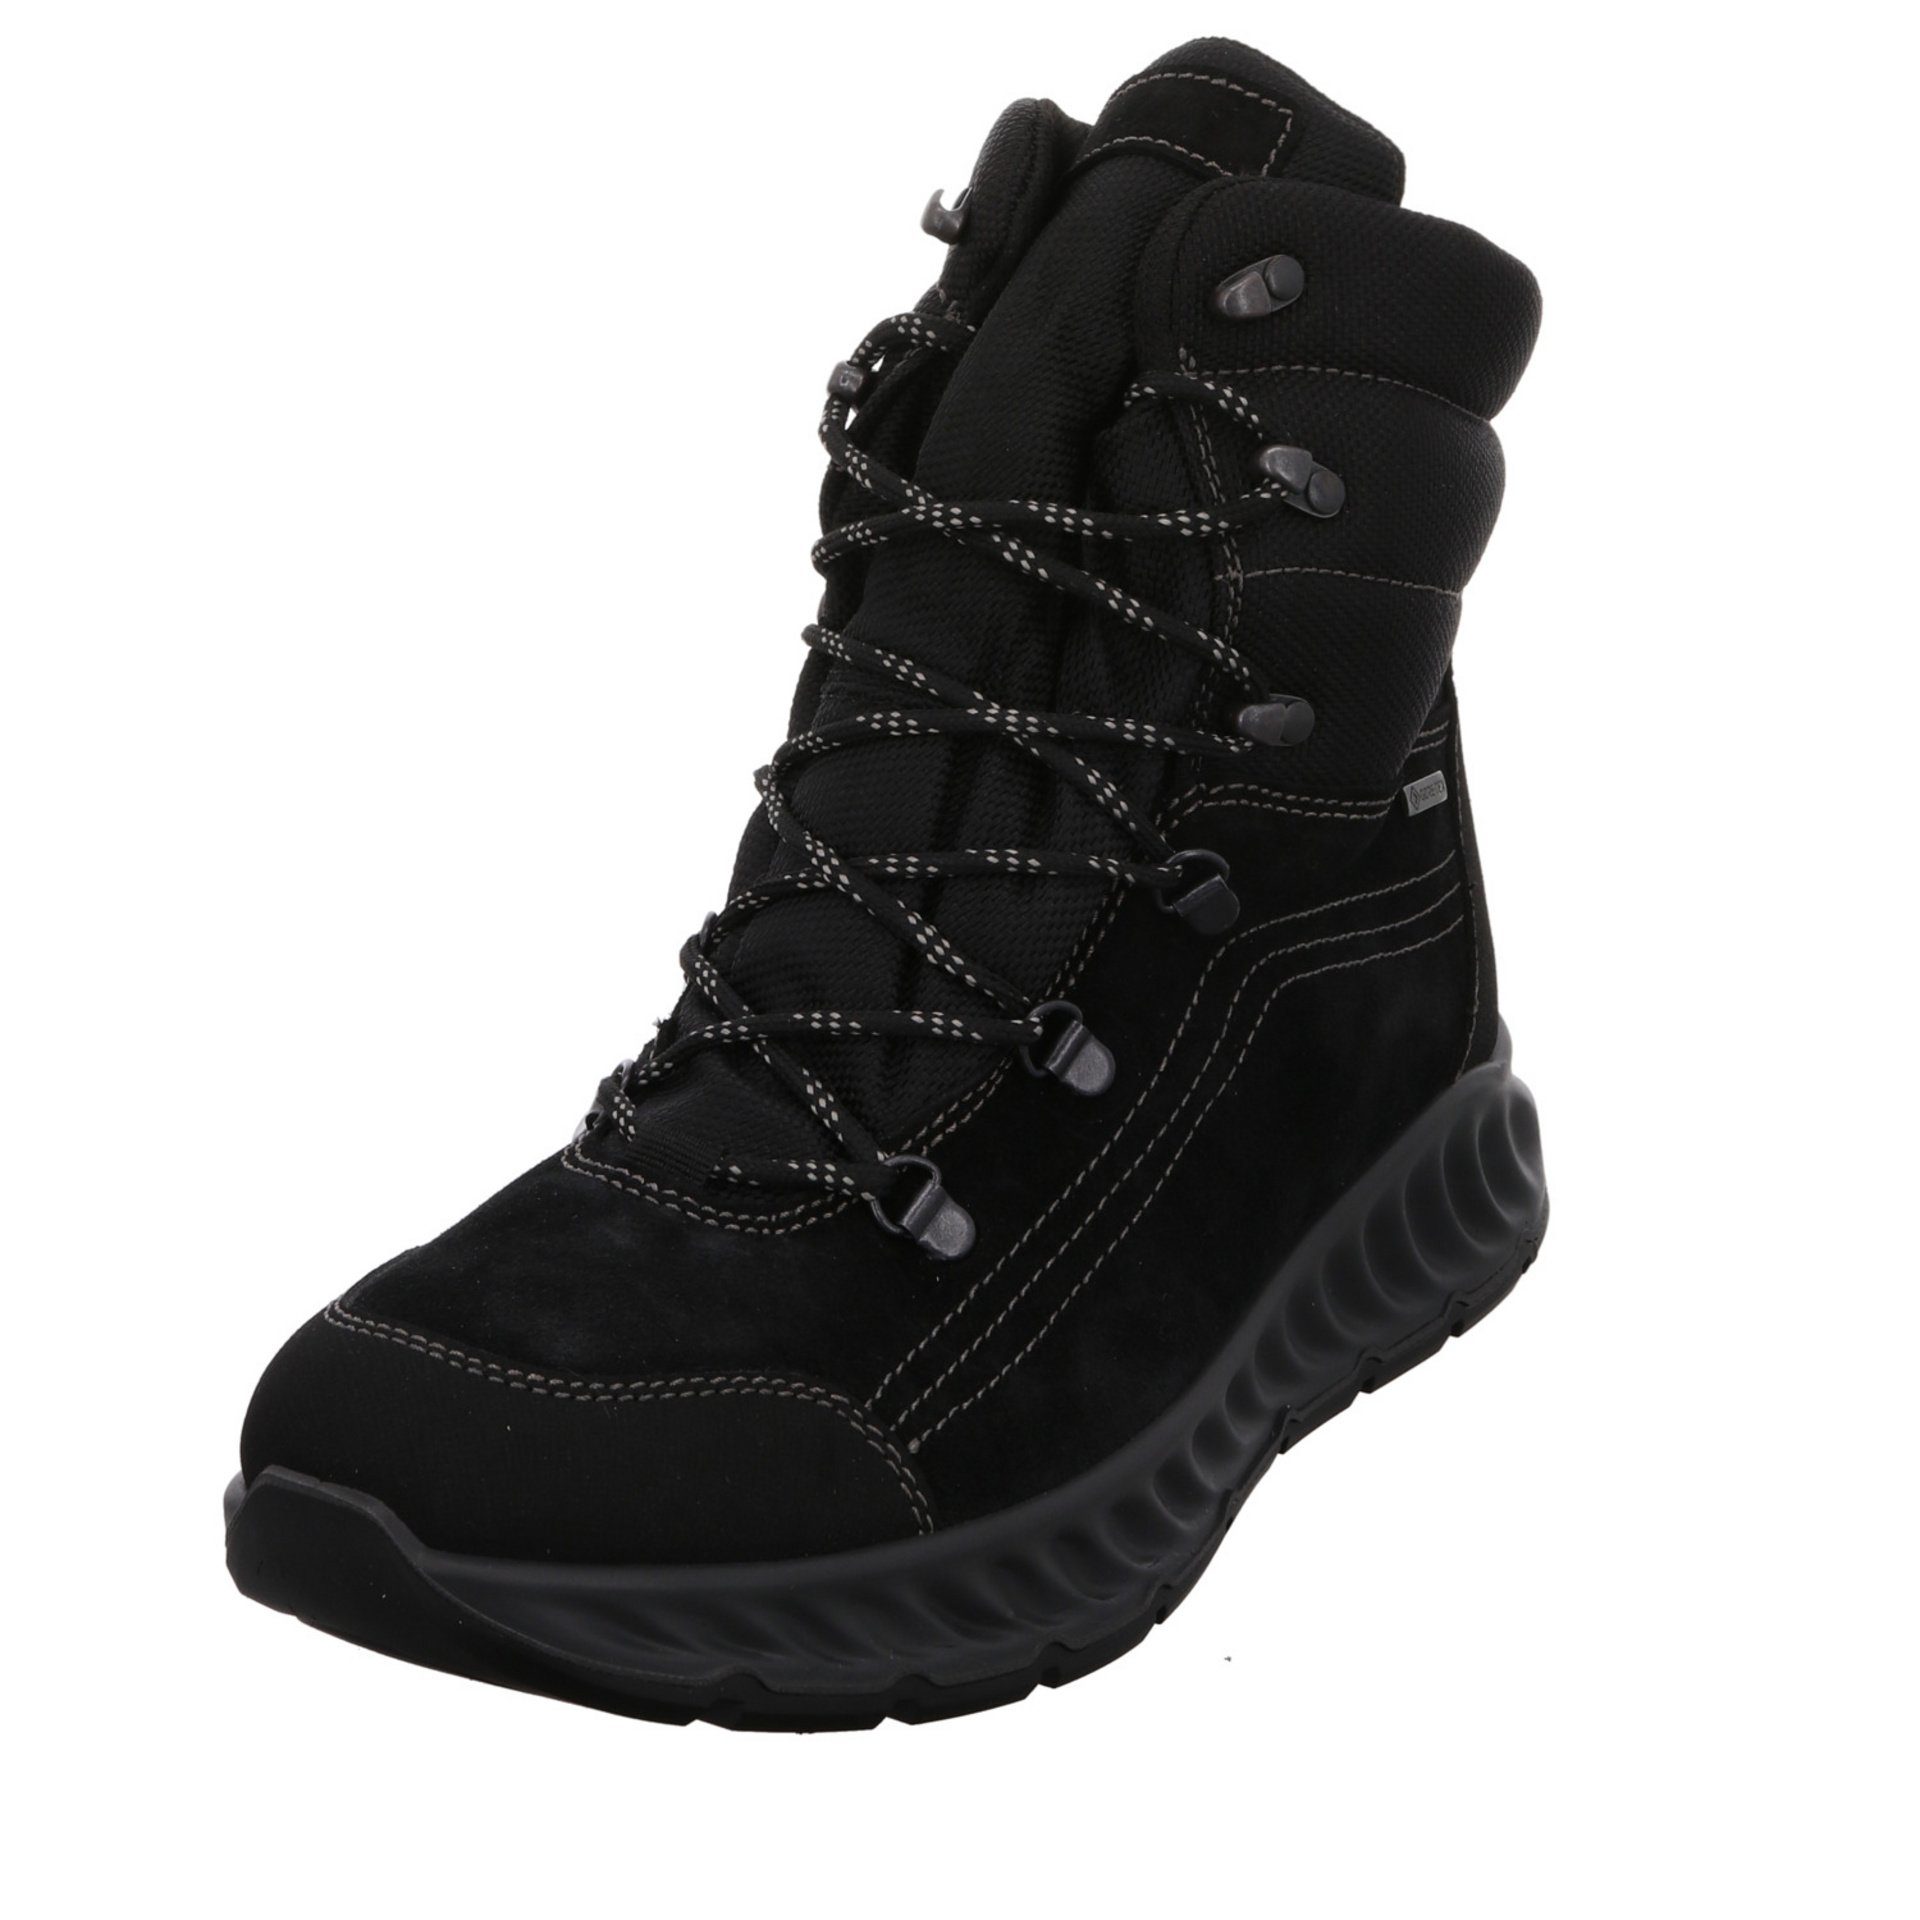 Ara Herren Winterstiefel Schuhe Paolo Boots Snowboots Leder-/Textilkombination schwarz 046474